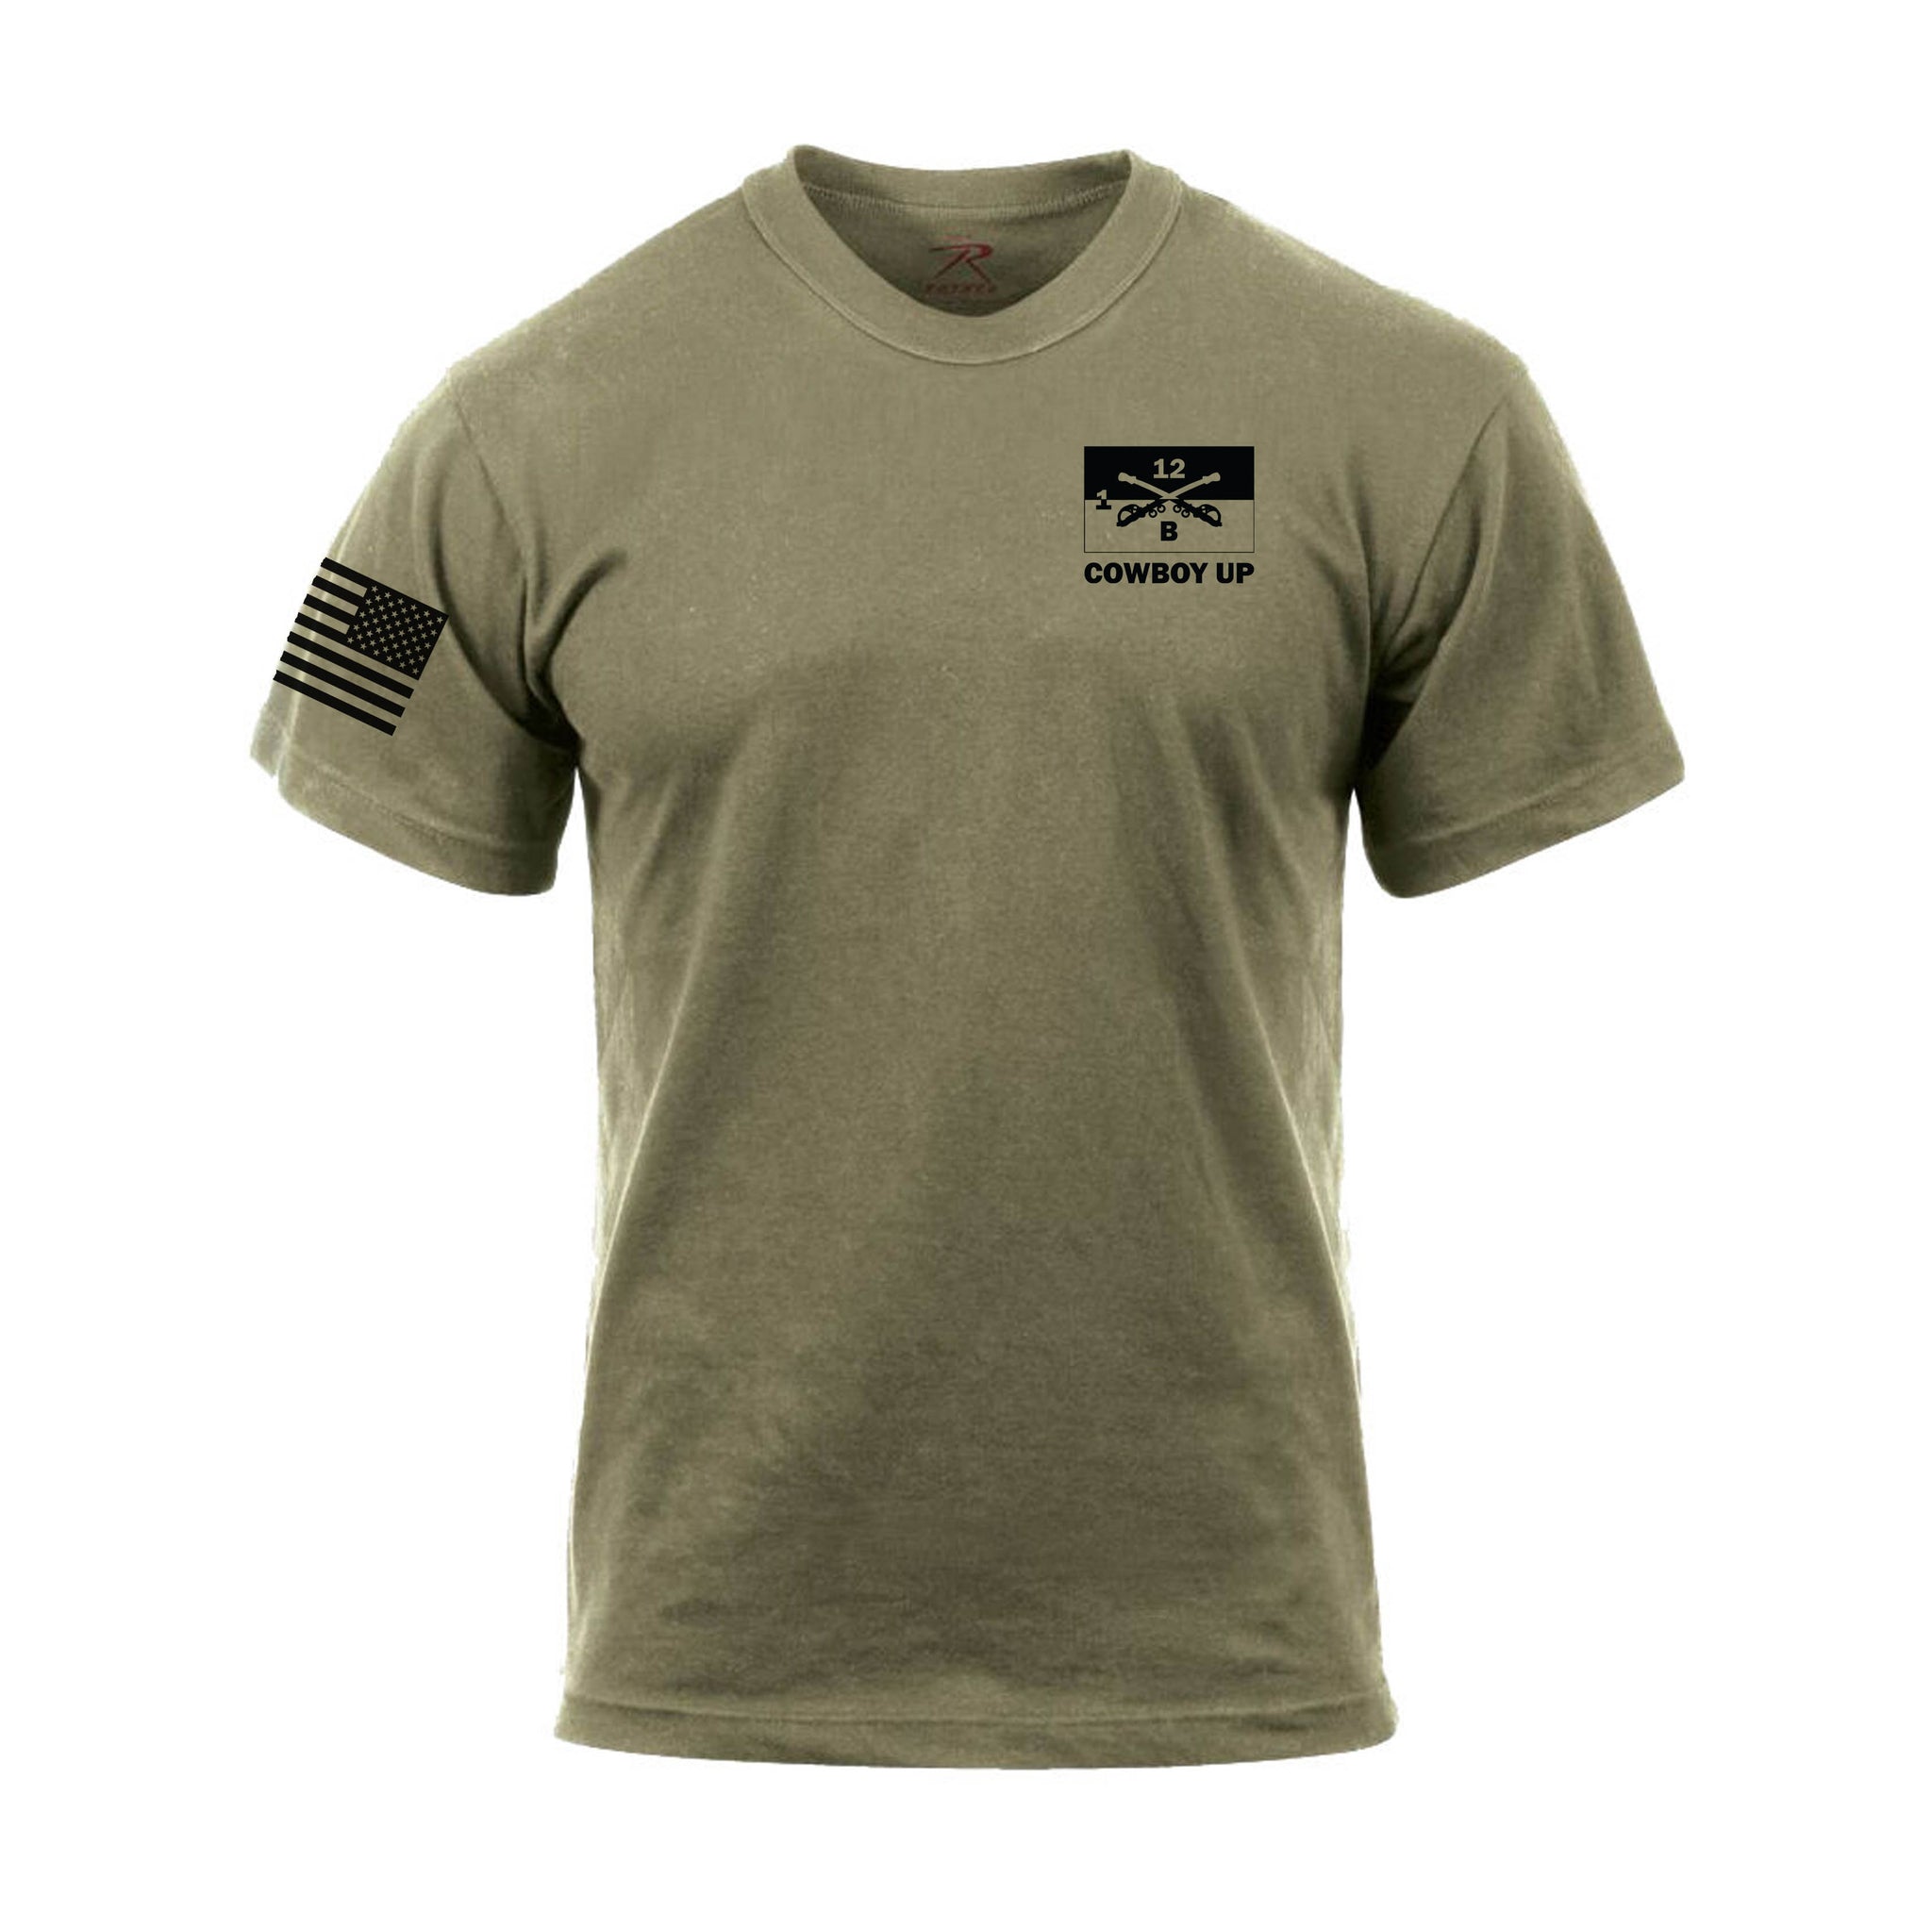 Blackhorse Company Shirt